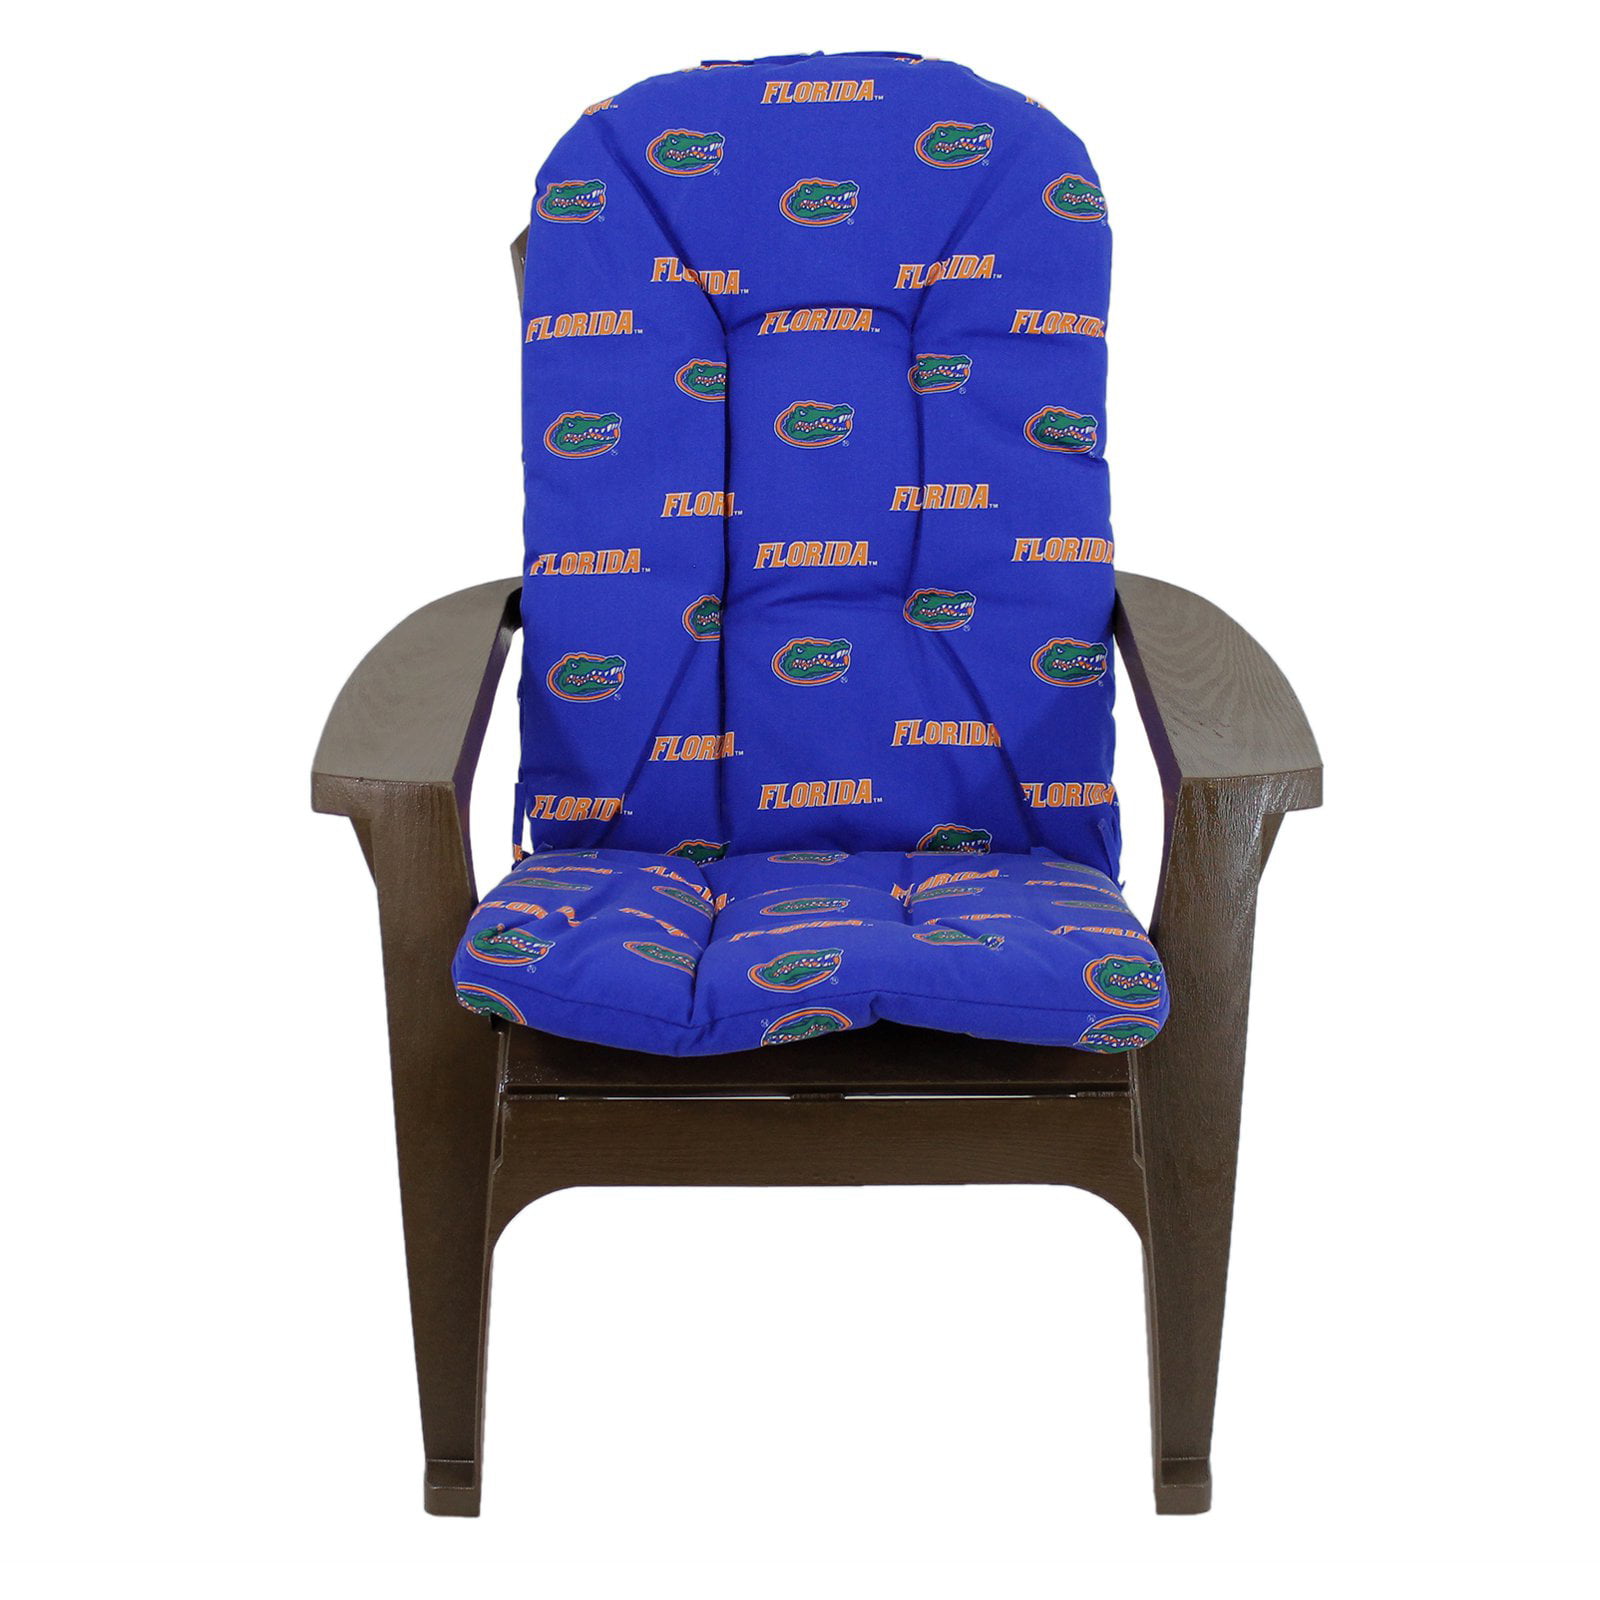 College Covers 49" x 20" Blue Adirondack Chair Cushion - Walmart.com